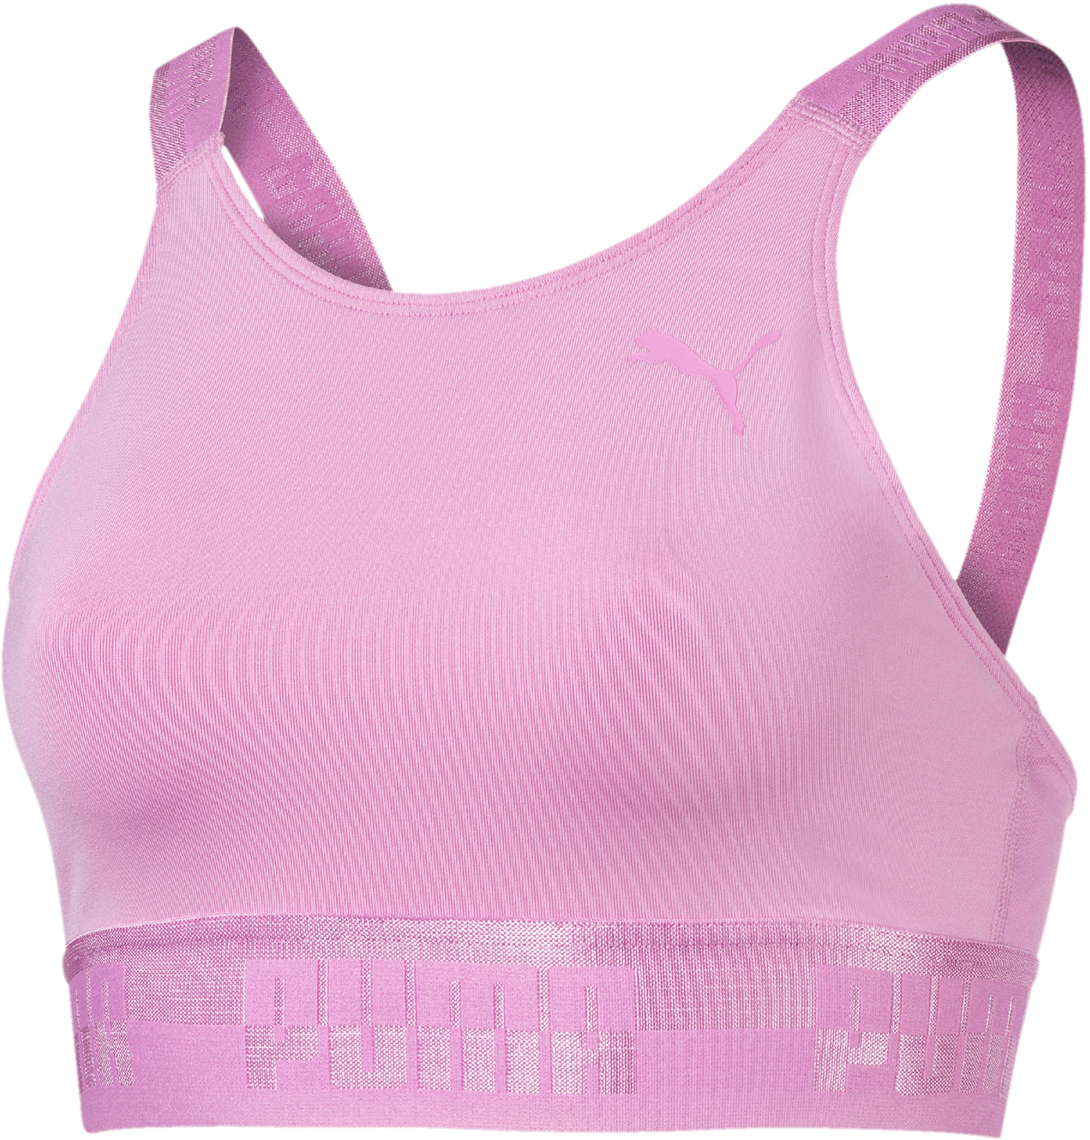 Топ-бра женский Puma Soft Sport Crop Top, цвет: розовый. 85204241. Размер XS (40/42)